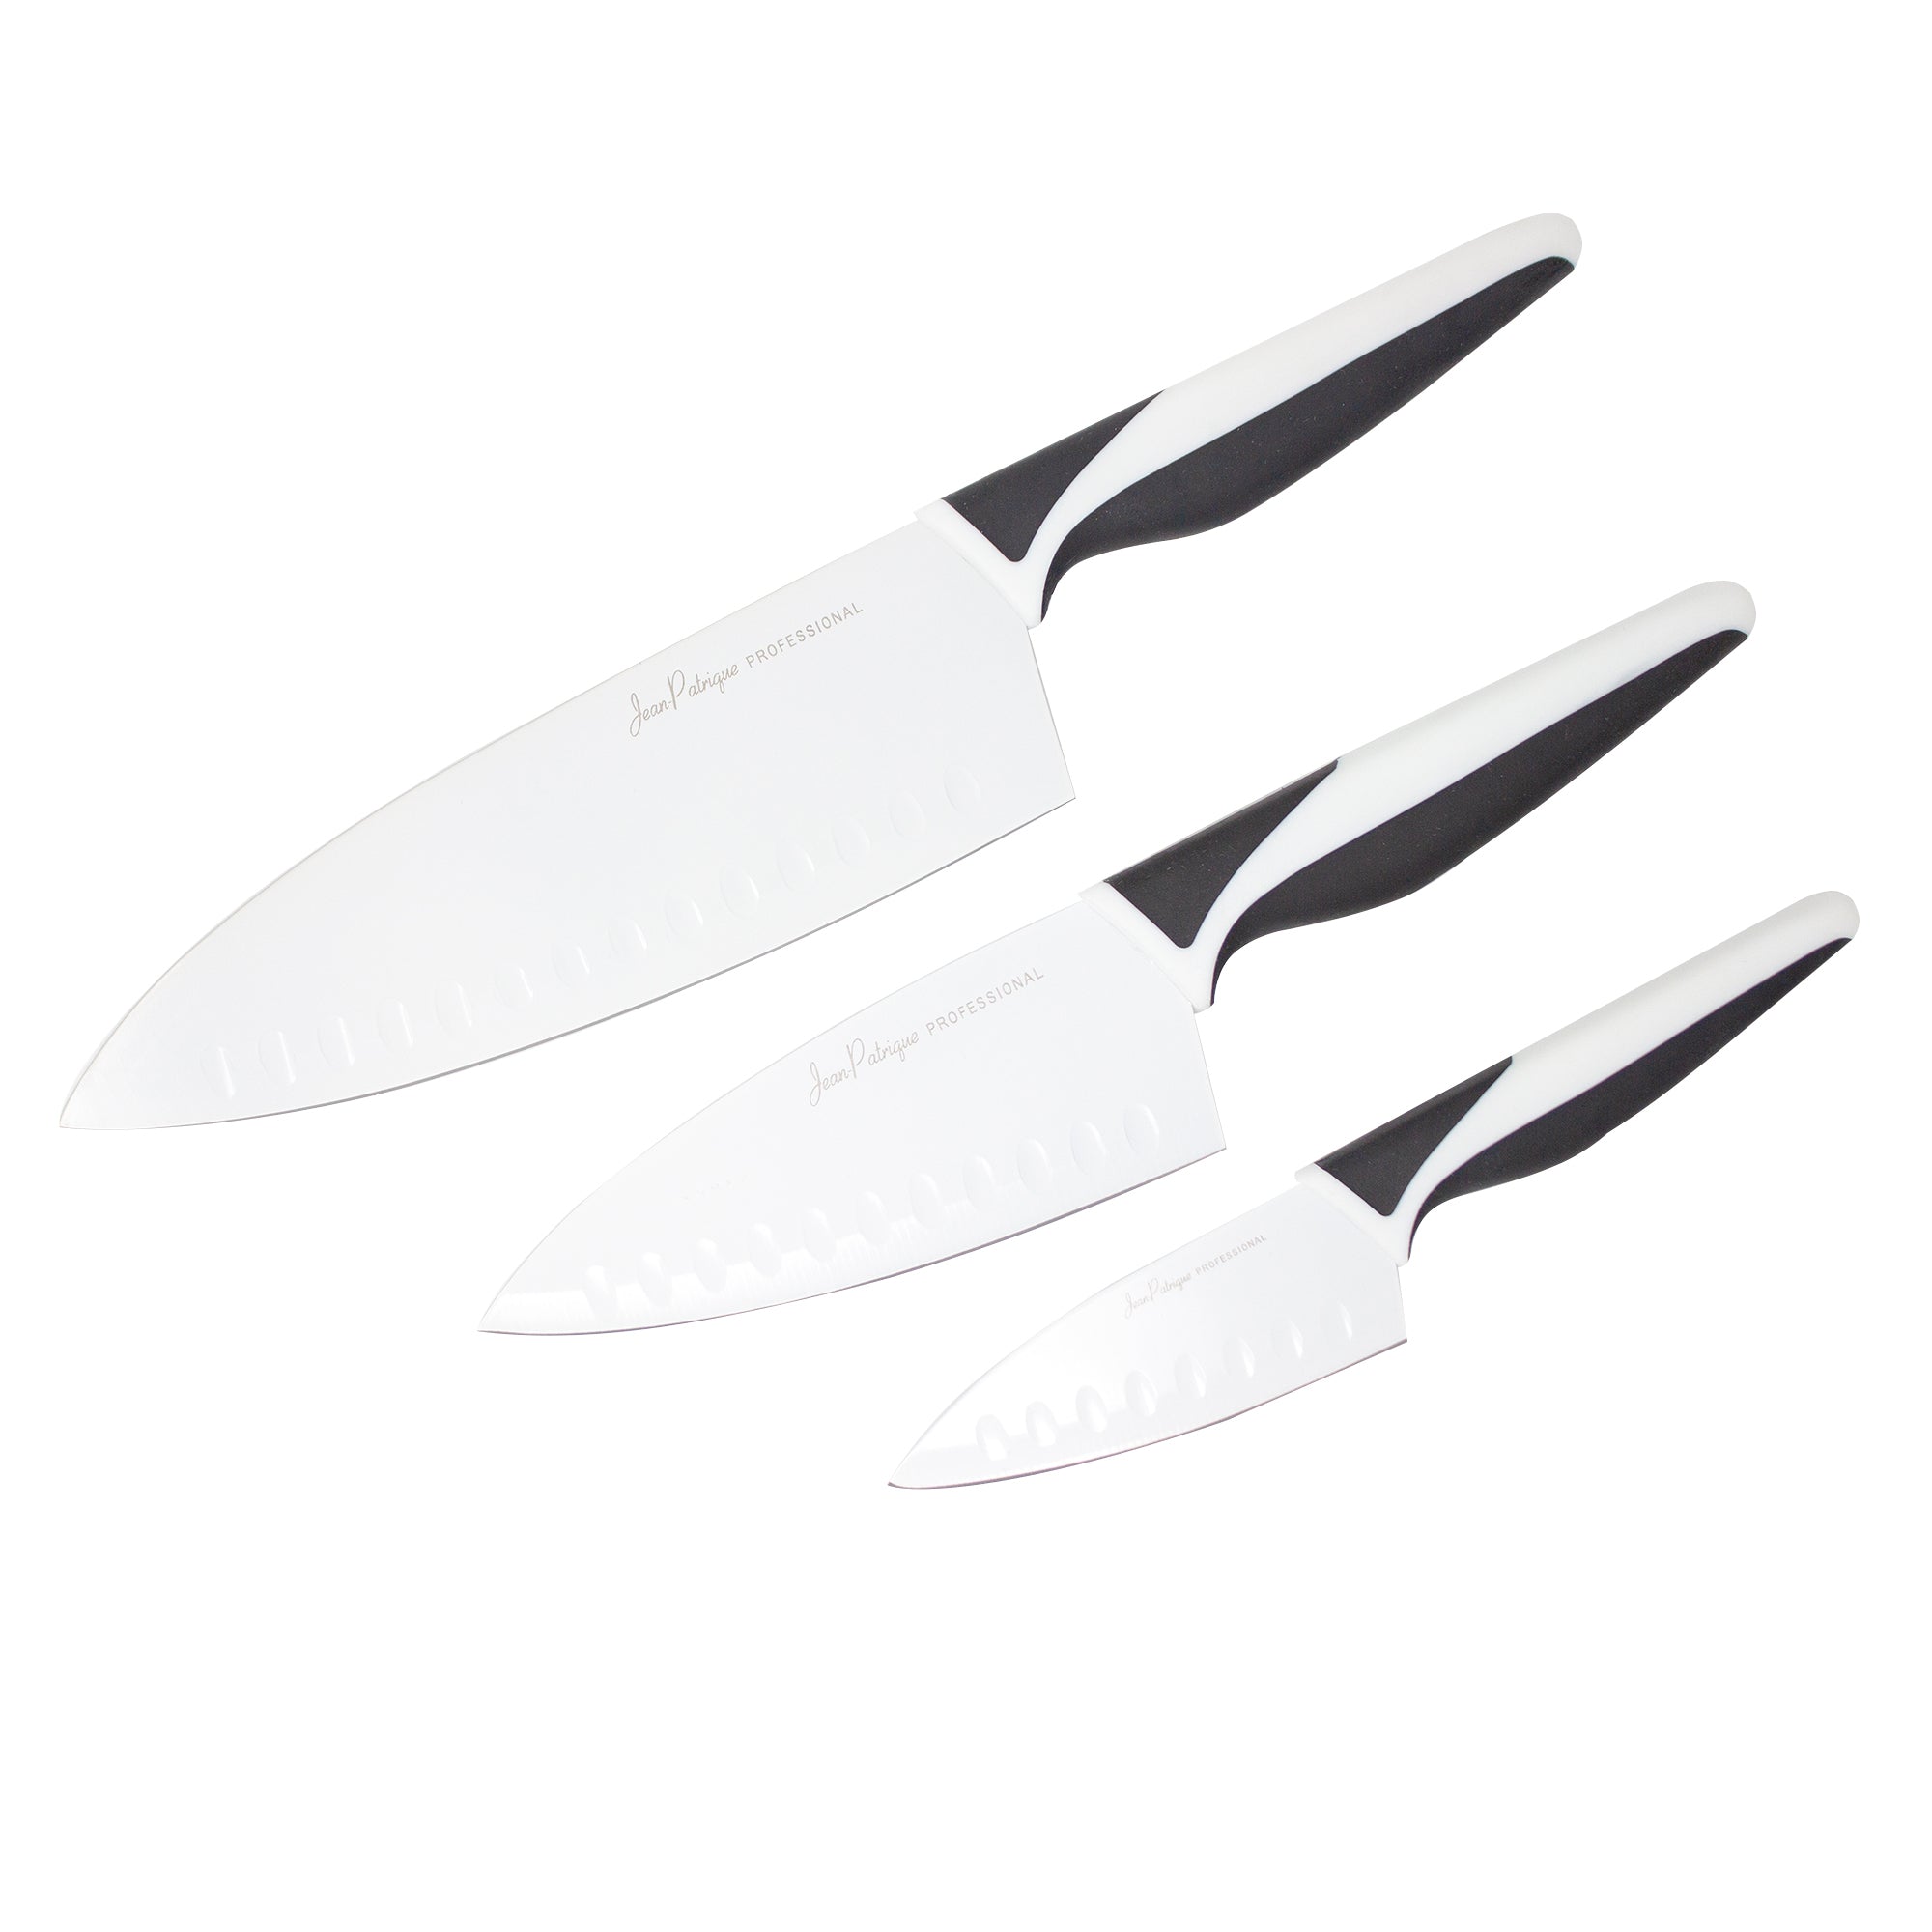 Jean Patrique Vibrant 5-Piece Knife Set – Jean Patrique Professional  Cookware